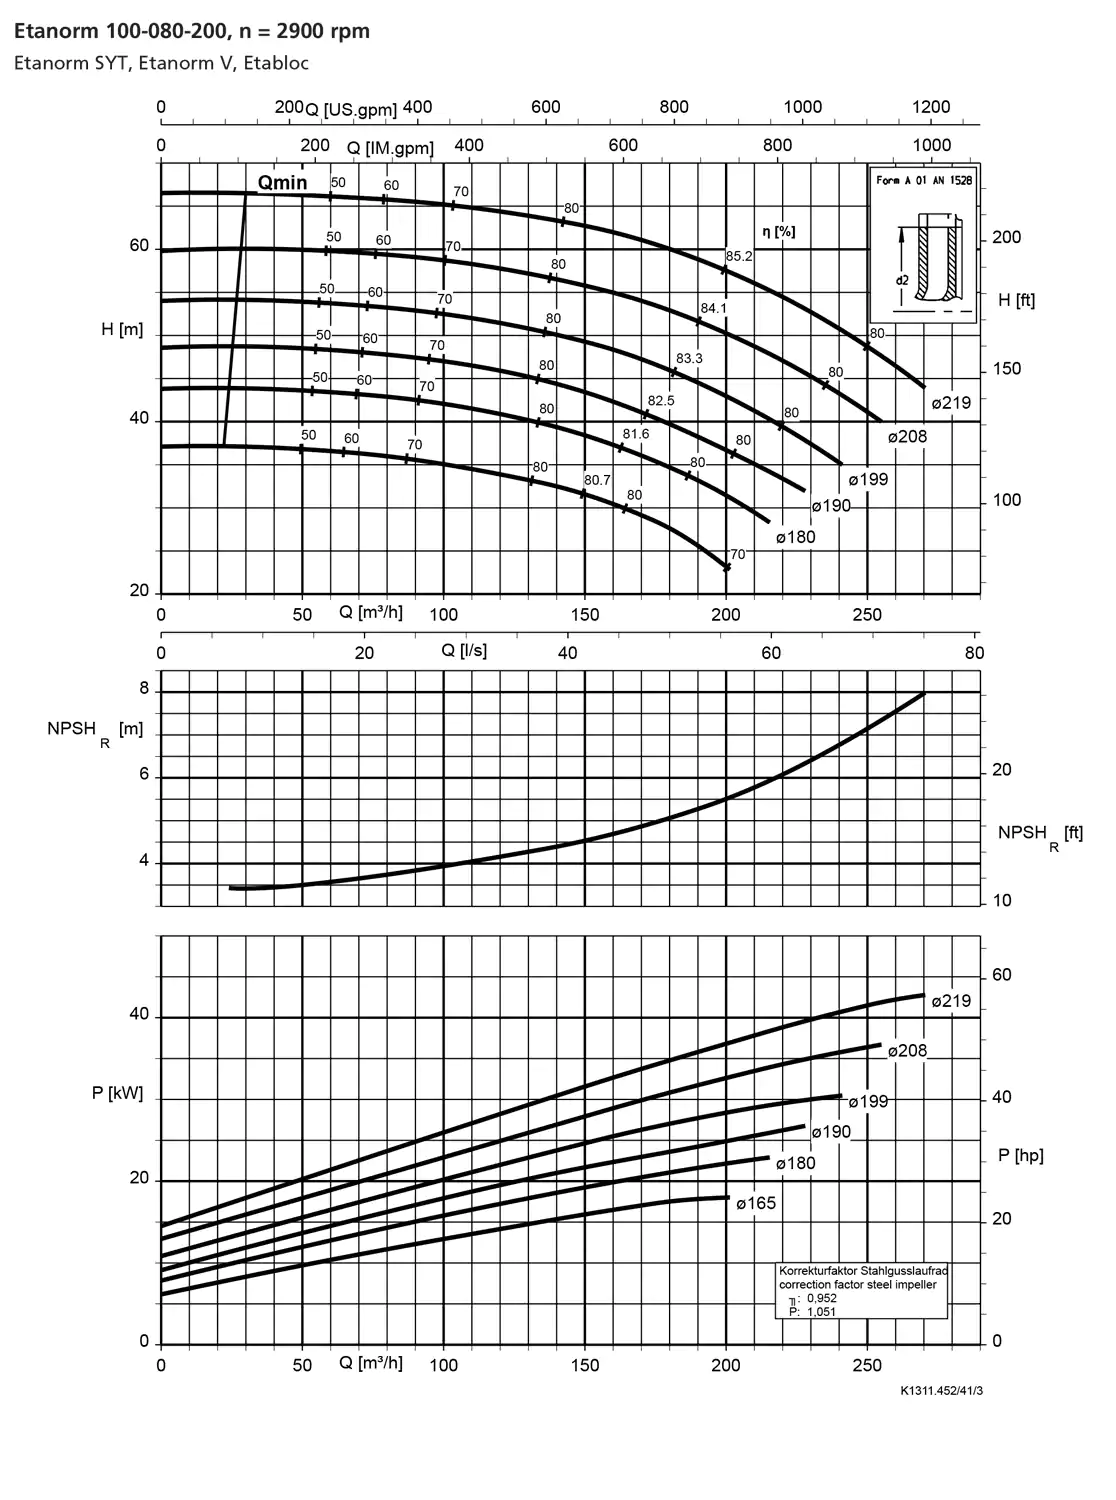 نمودار-کارکرد-پمپ-etanorm-100-80-200-2900